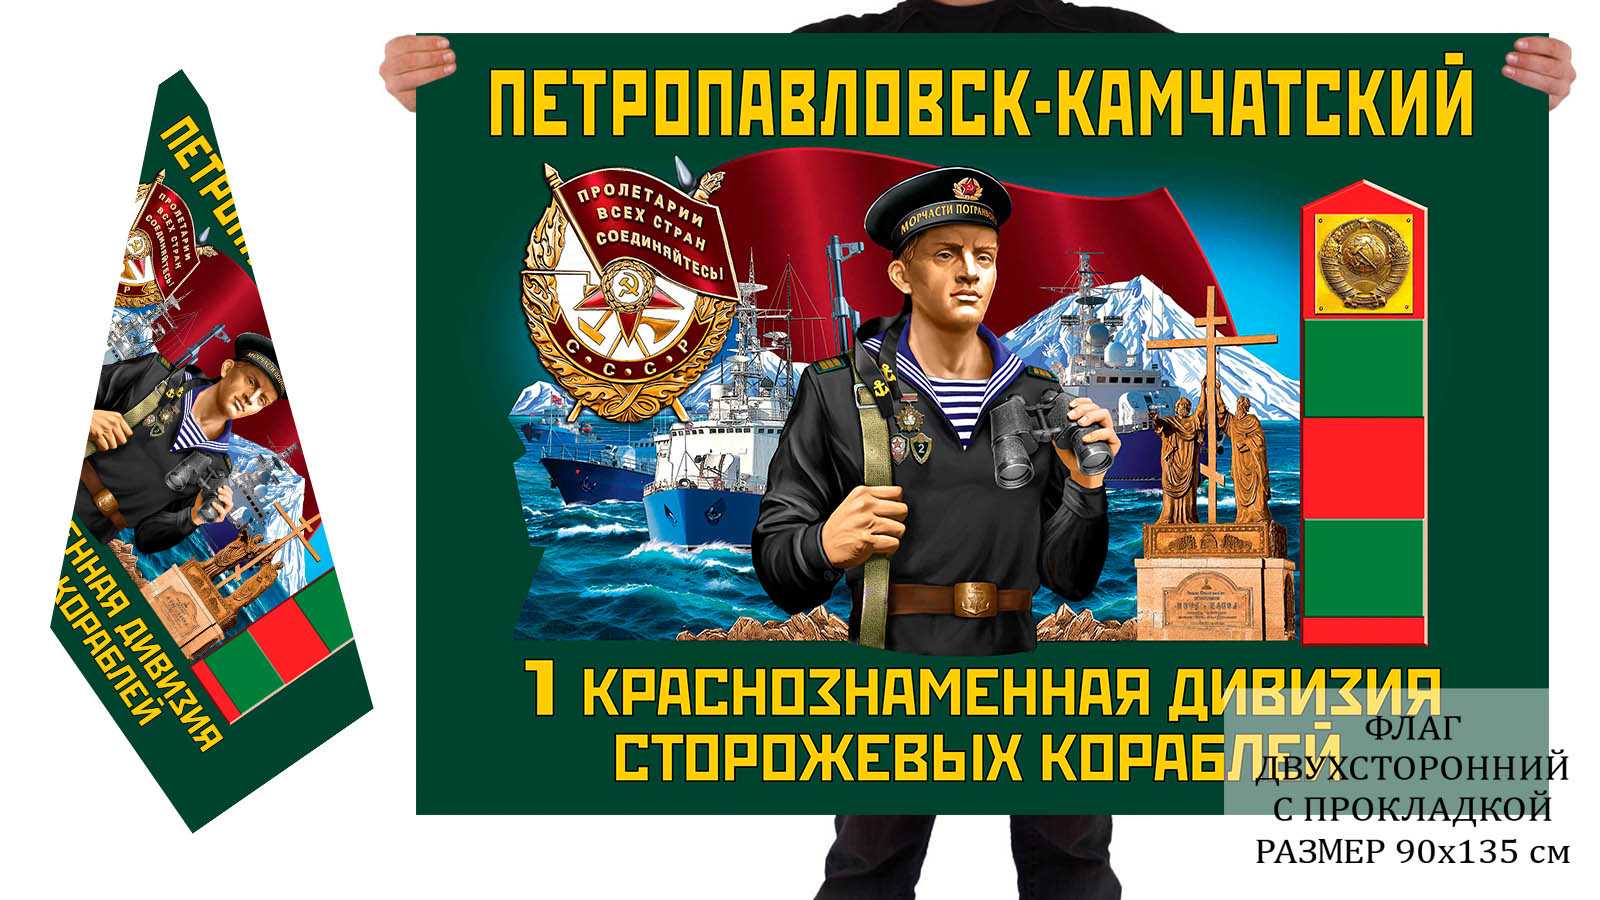 Двусторонний флаг 1 Краснознамённой дивизии пограничных сторожевых кораблей